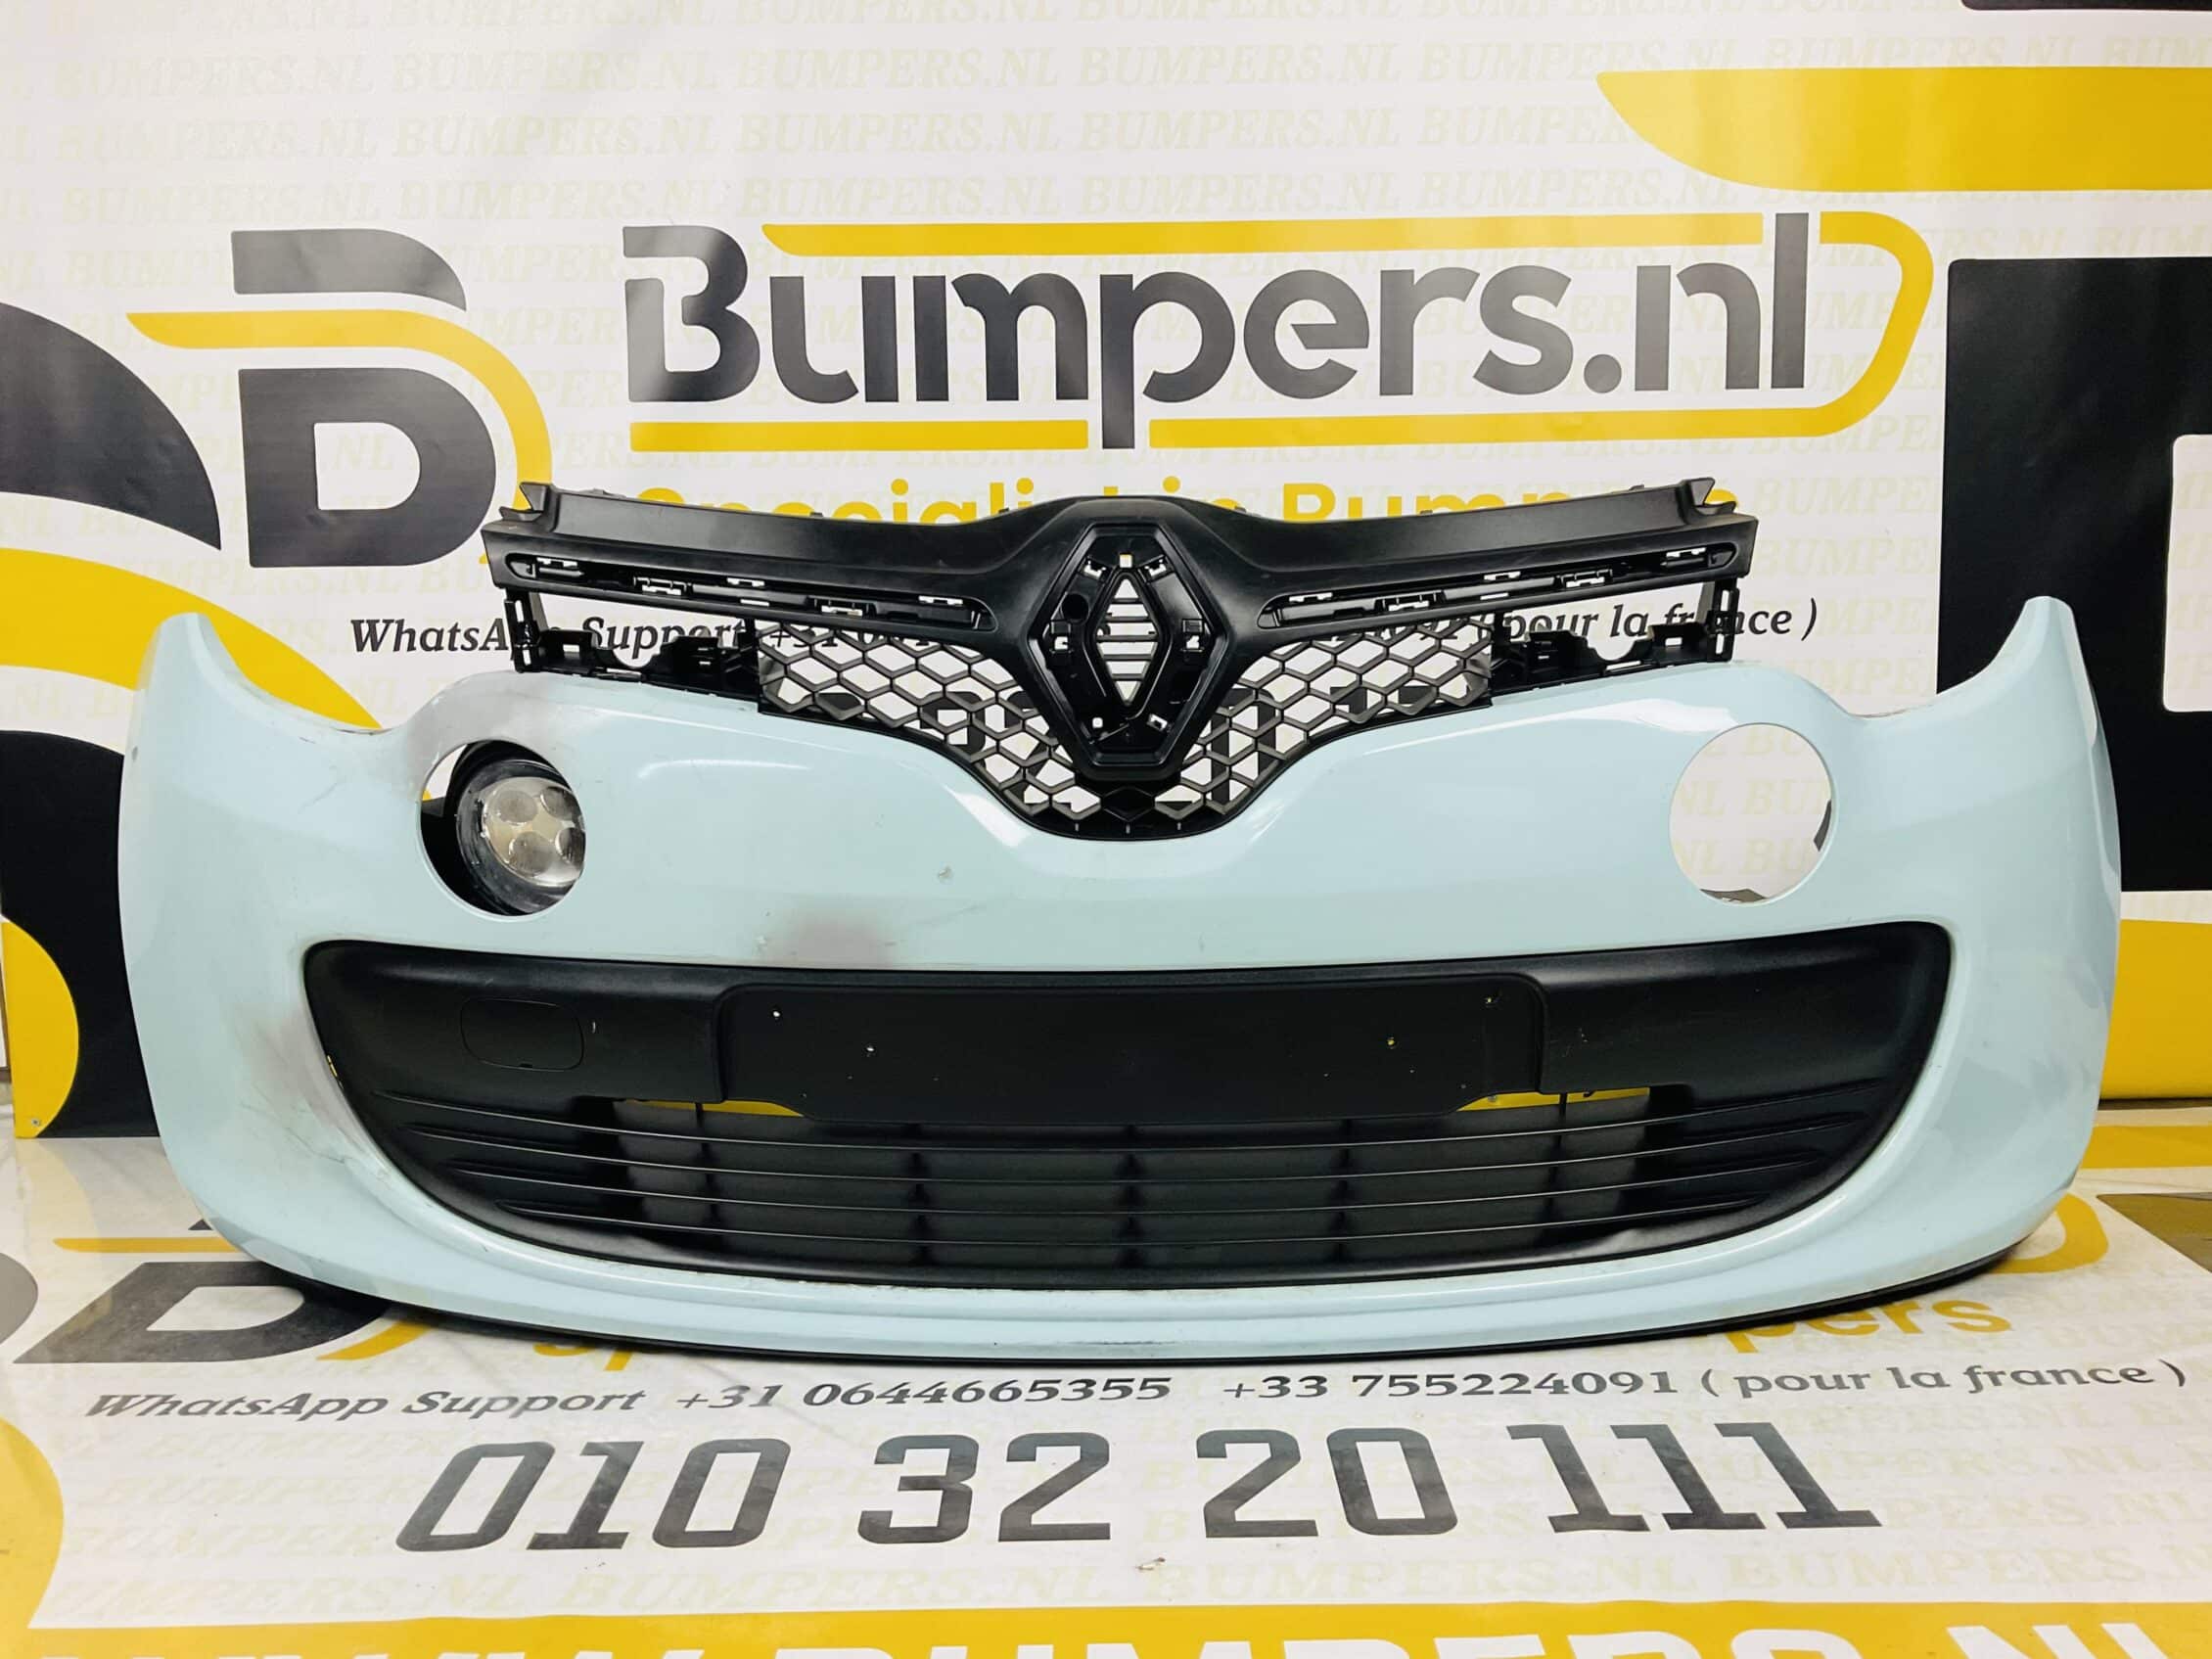 uitlaat Belegering Balling Bumper Renault Twingo 3 Facelift 2014-2019 Voorbumper 2-F3-819 - Bumpers.nl